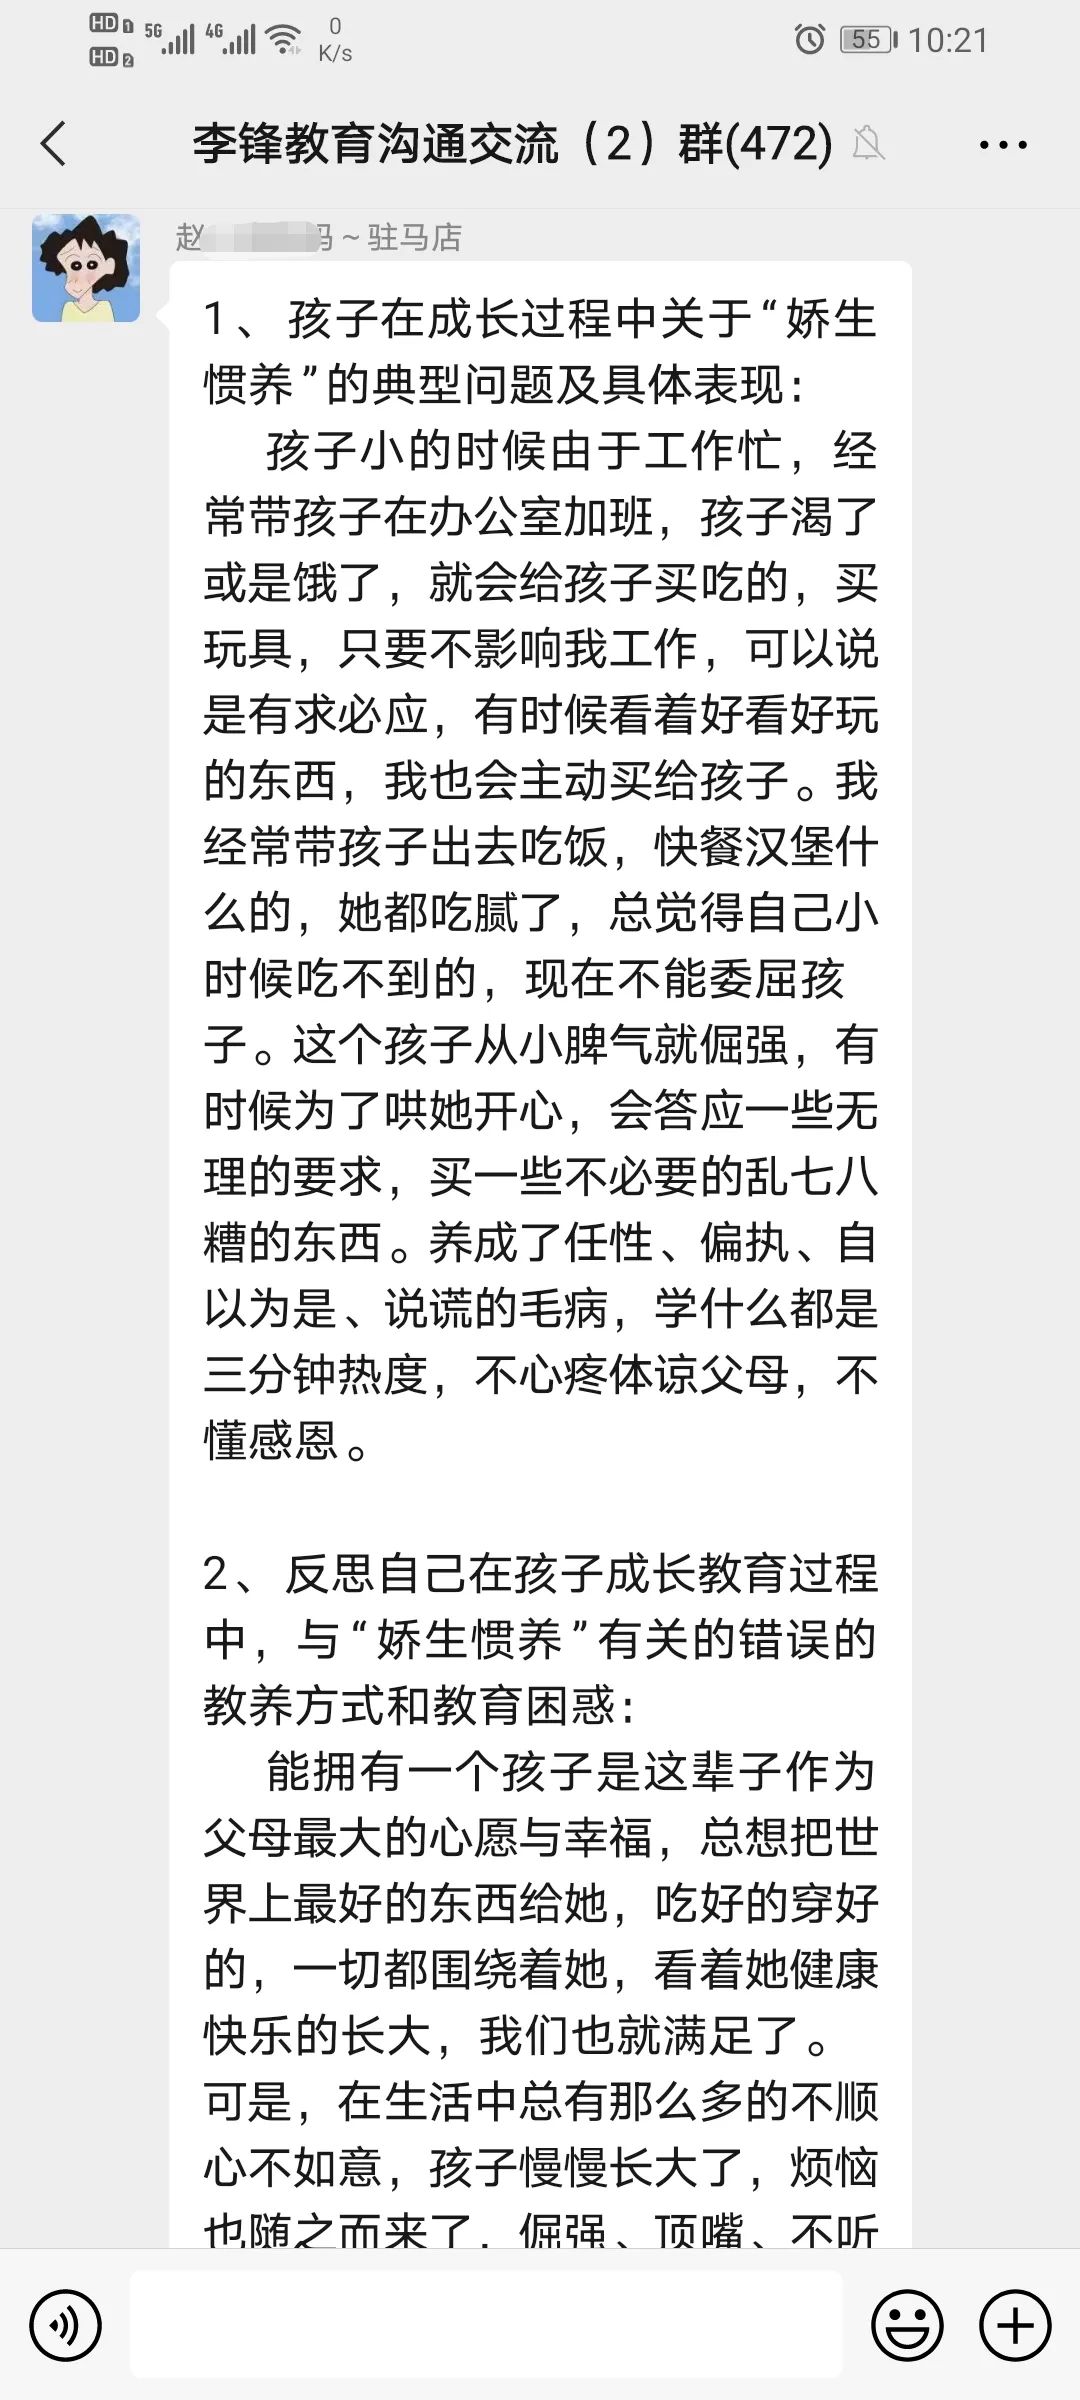 李锋心理教育中心2021年4月第一周娇生惯养之家校交流会记录_www.hnlfjy.com.cn